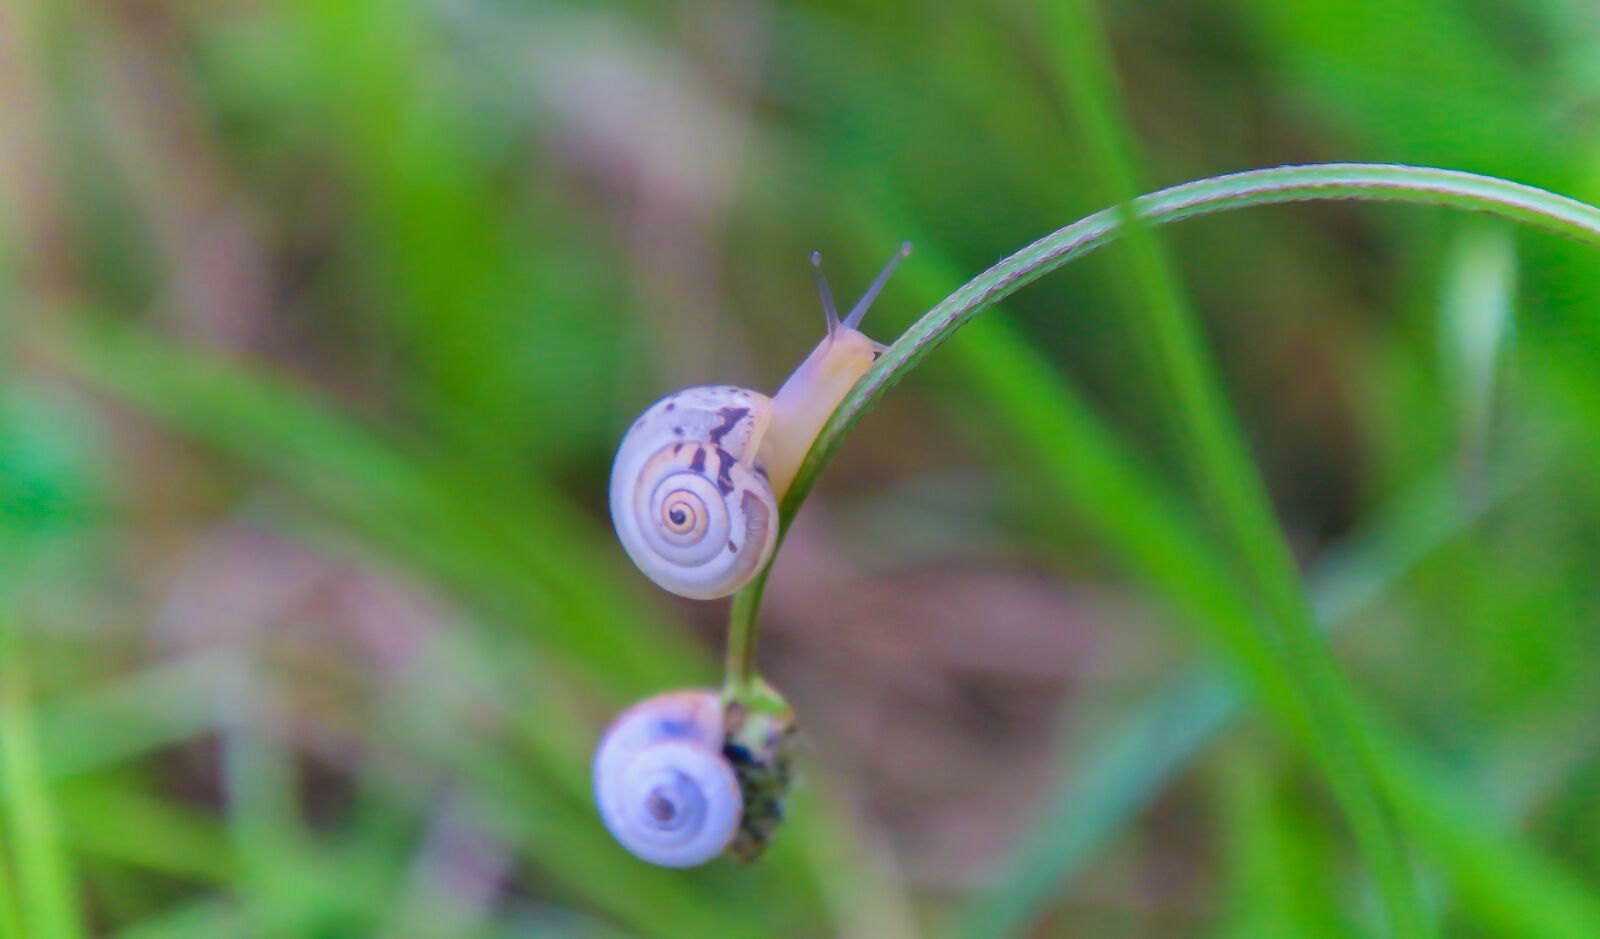 Canon EOS 70D sample photo. Snail, grass, climb photography